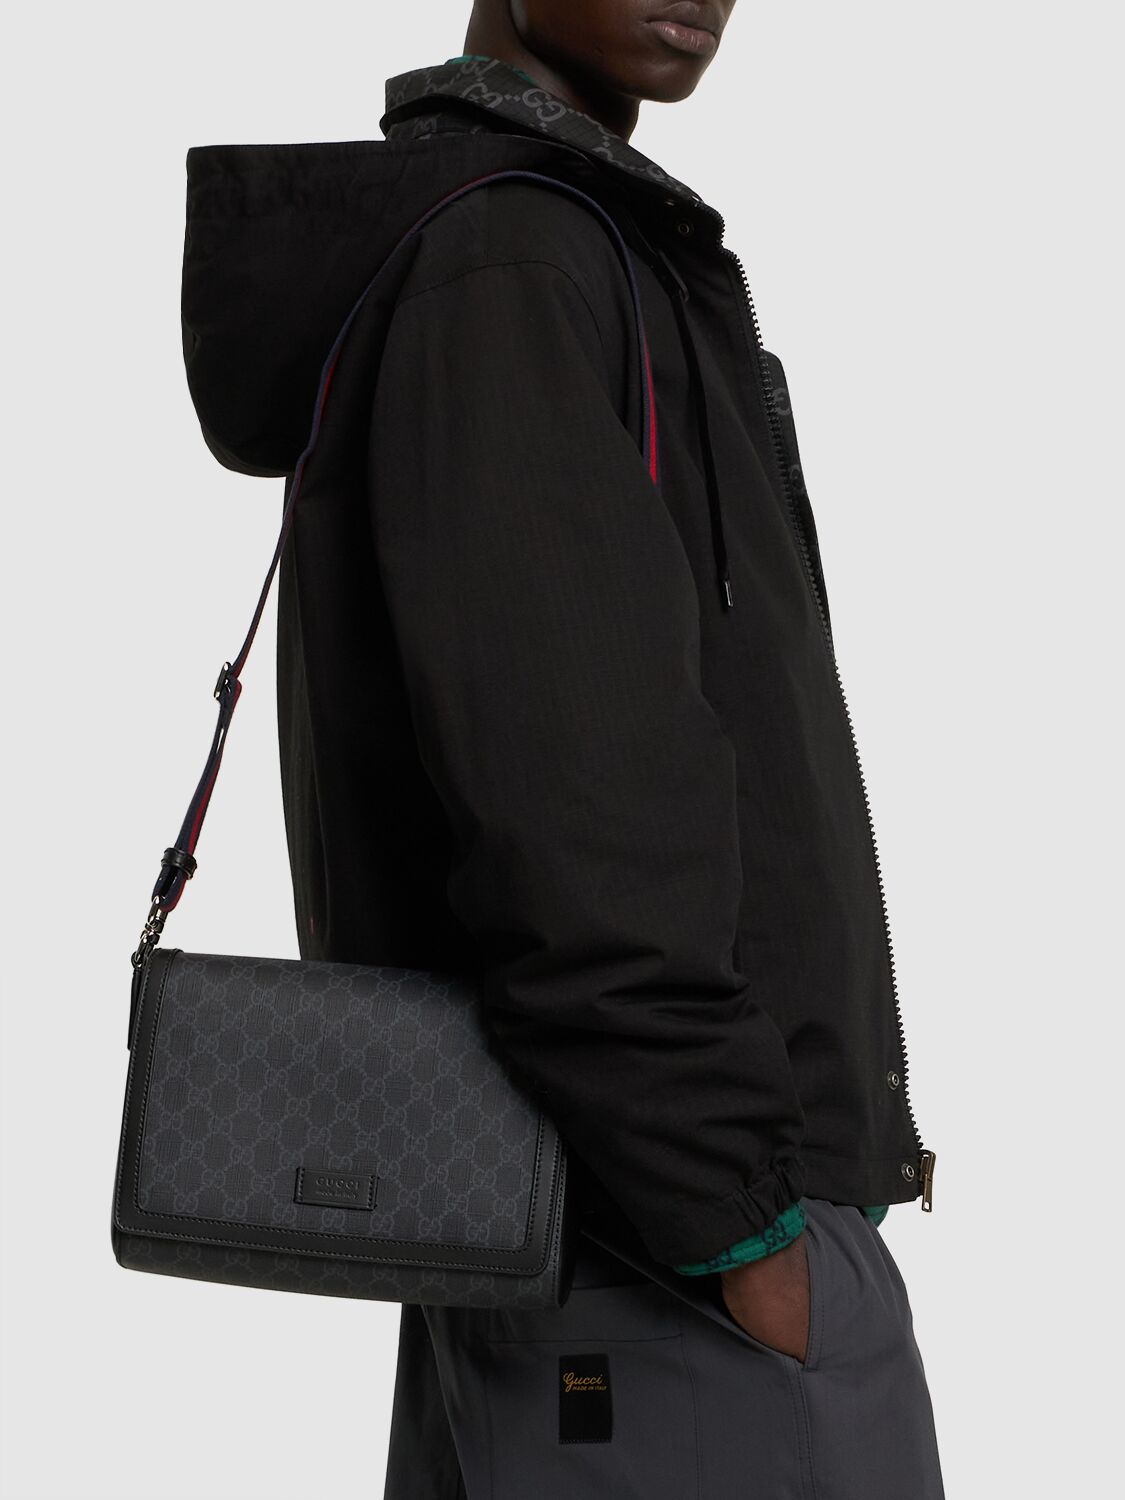 Shop Gucci Gg Supreme Crossbody Bag In Black